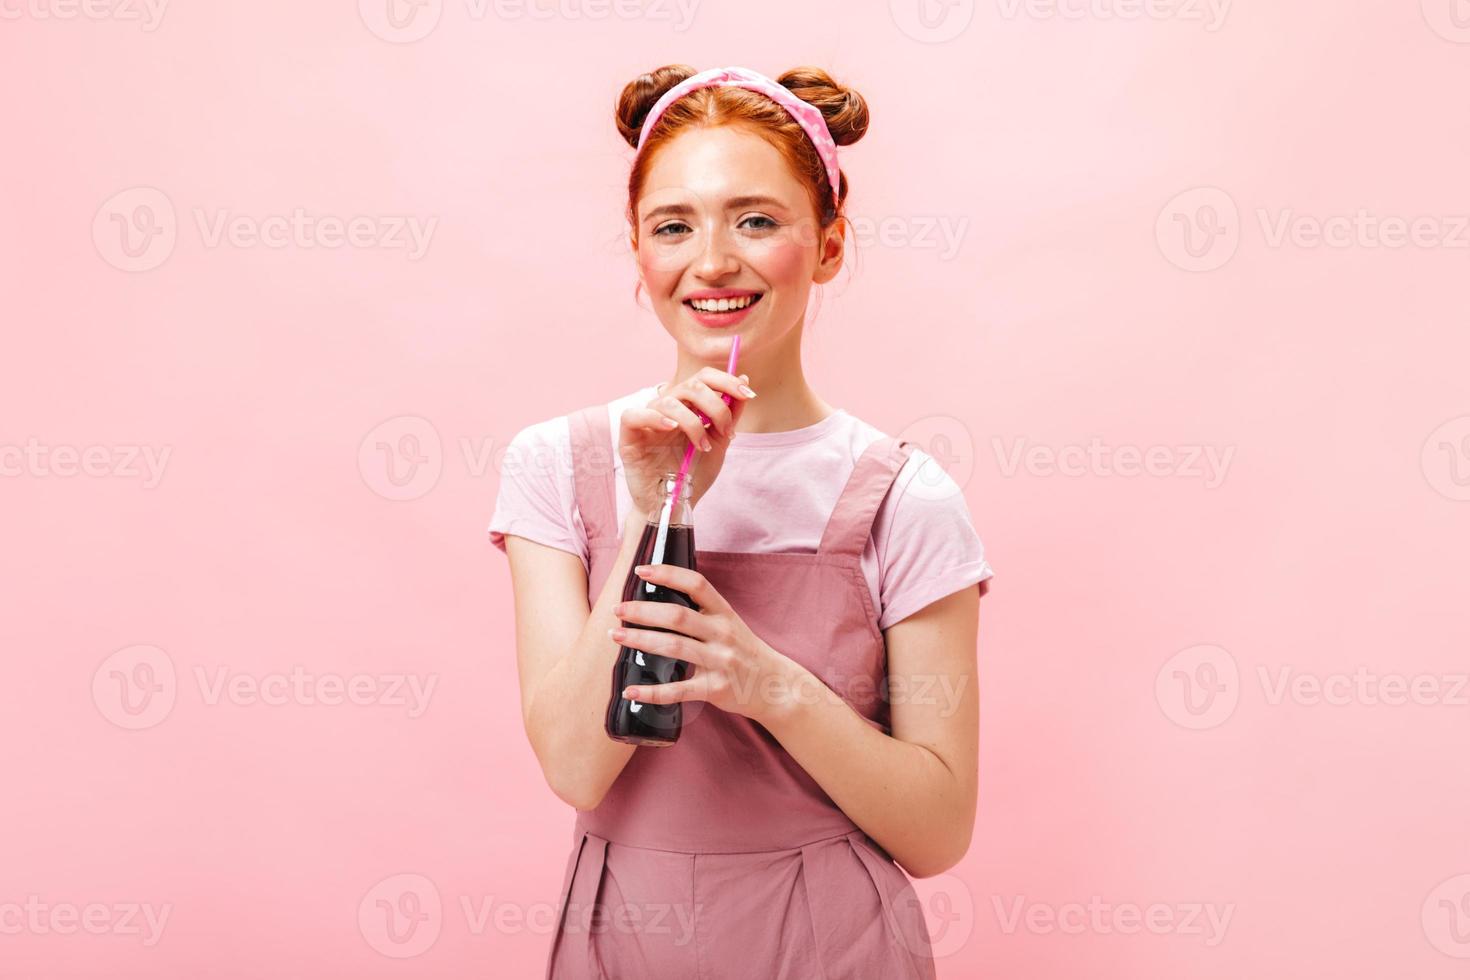 jovem alegre de vestido rosa mostra sinal de paz, sorri e segura garrafa de refrigerante no fundo rosa foto